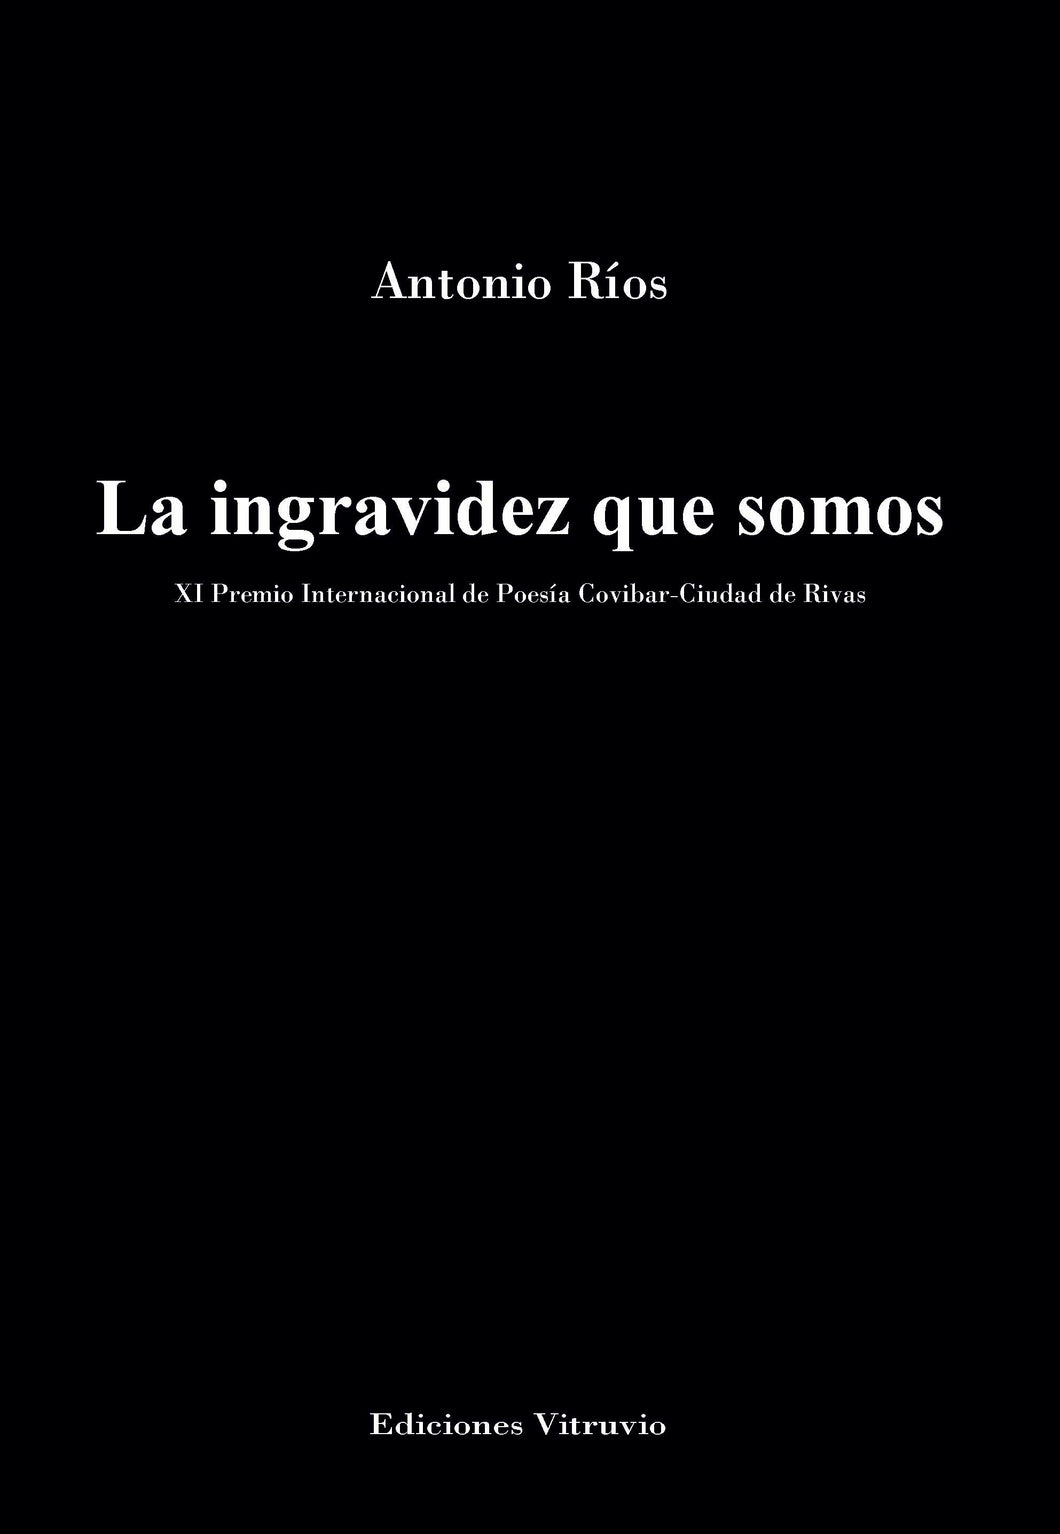 La ingravidez que somos, de Antonio Ríos